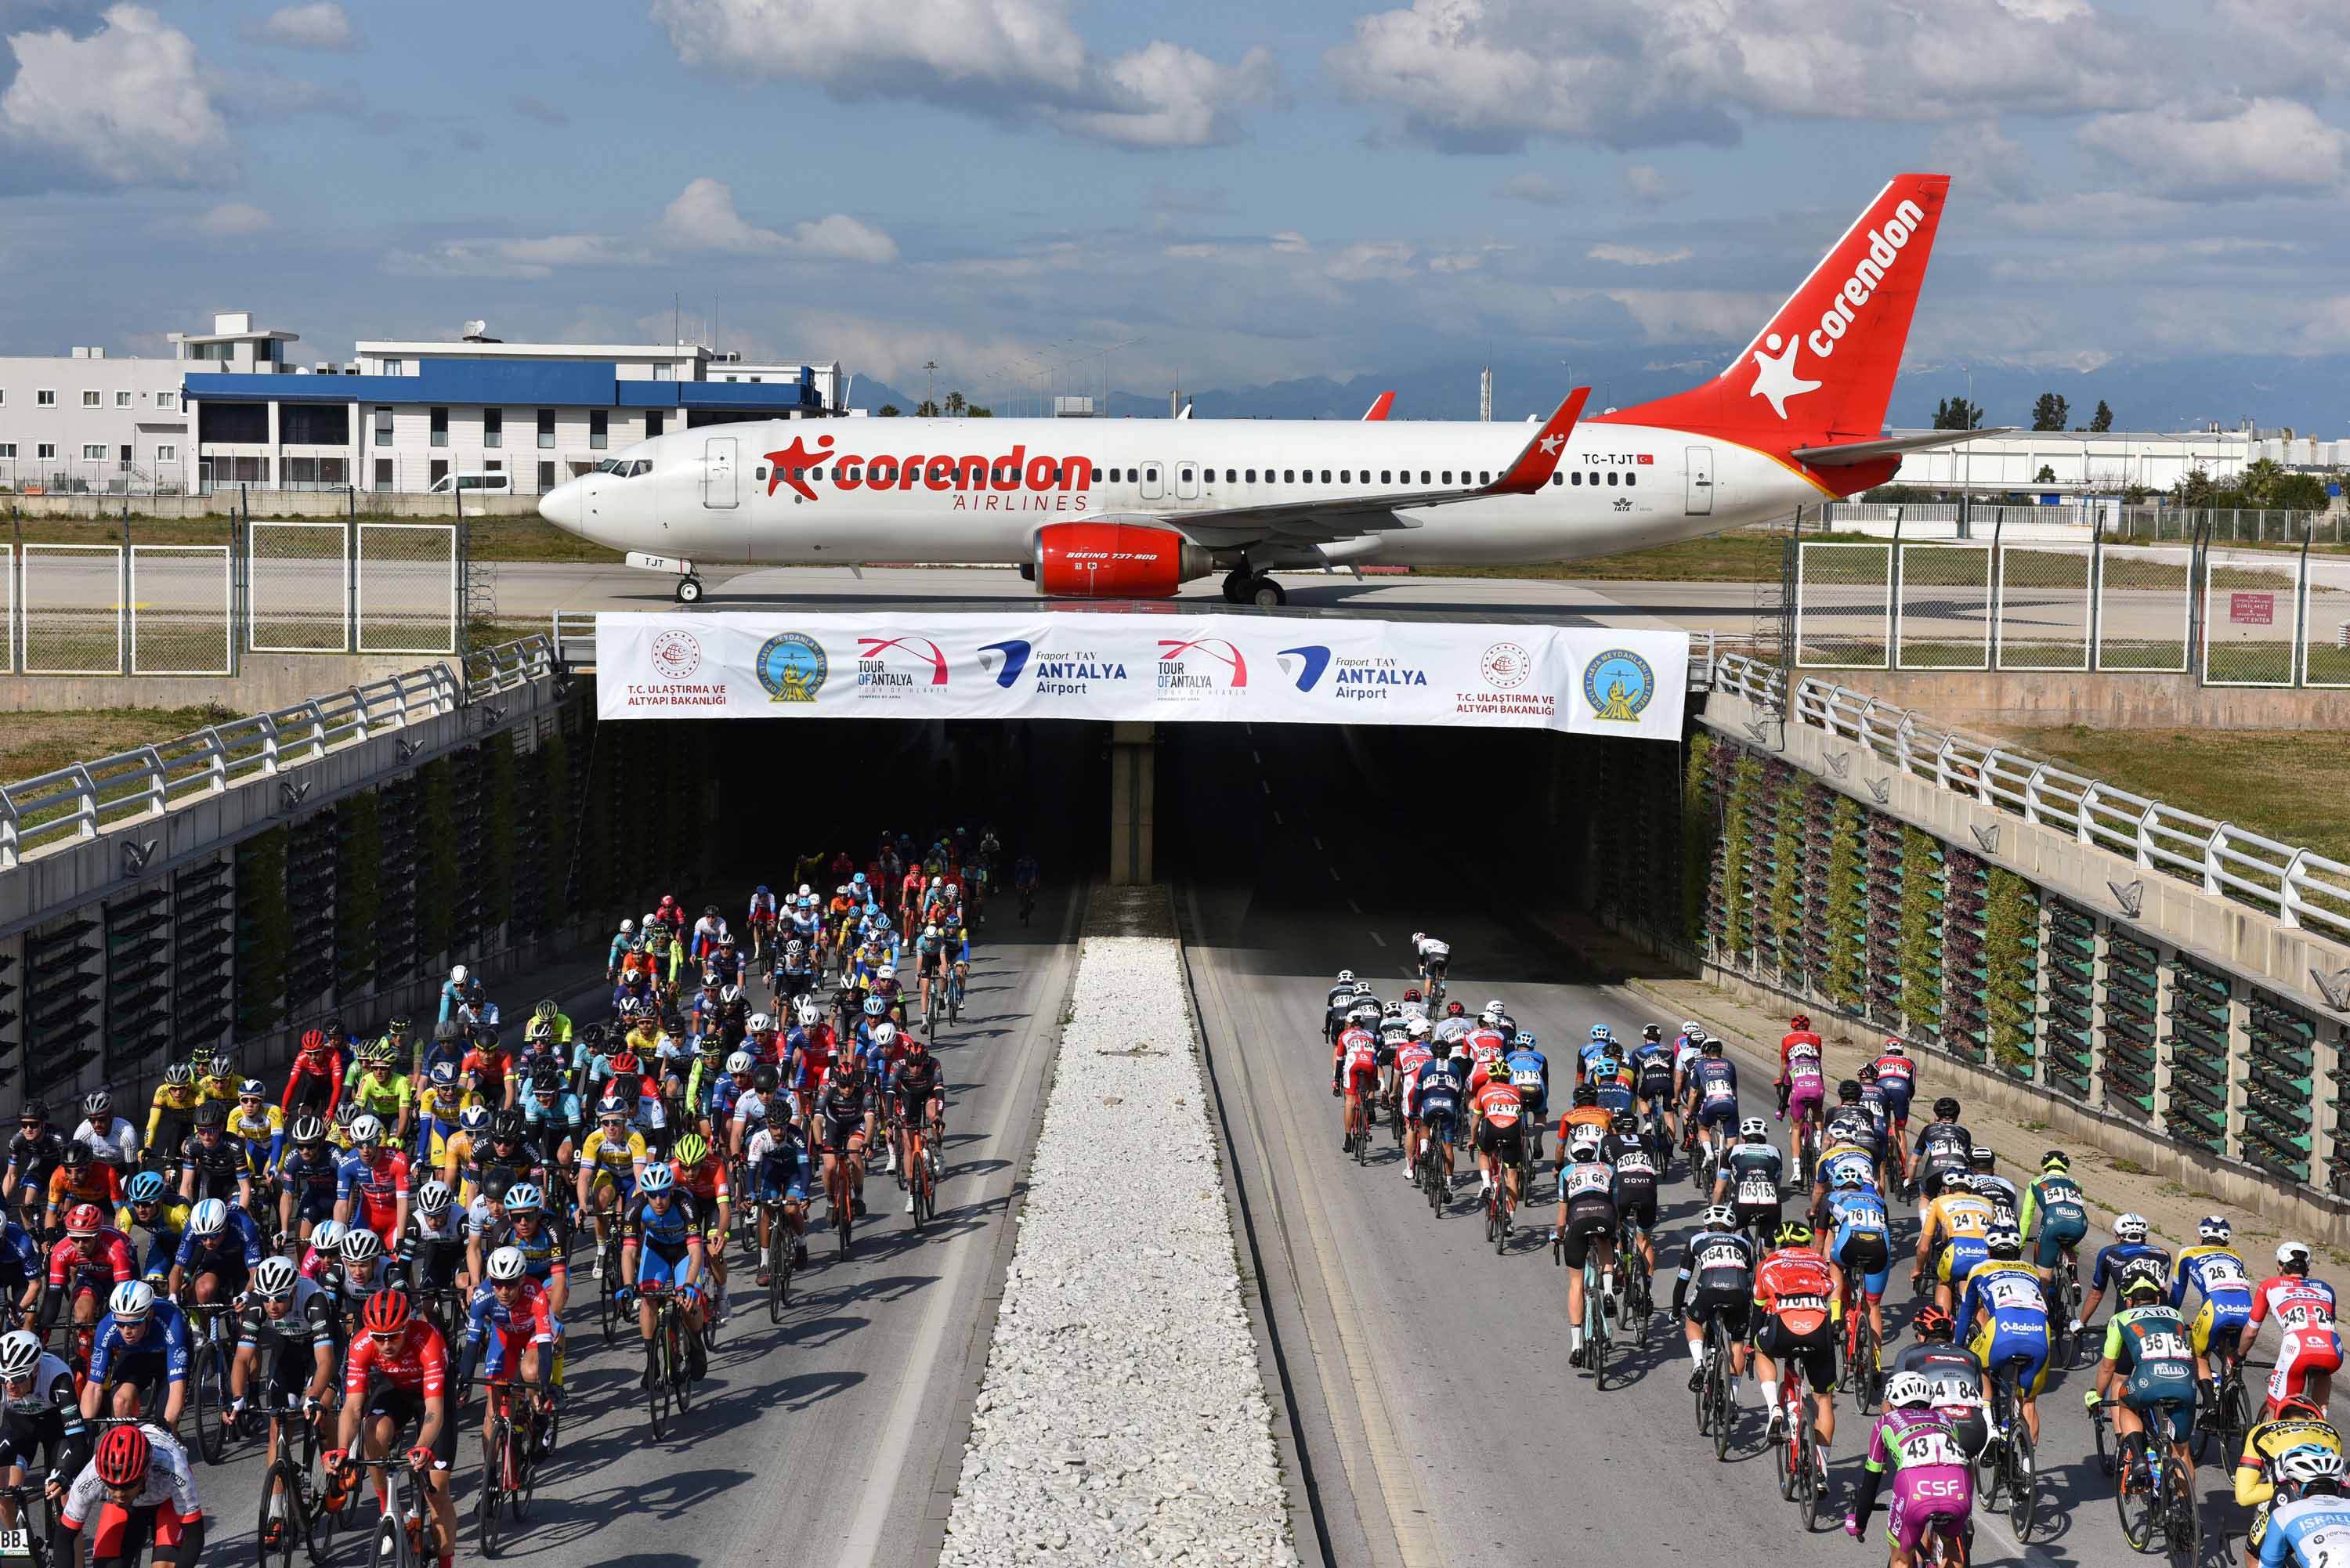 Corendon Airlines, Tour of Antalya’ya Destek Vermeye Devam Ediyor